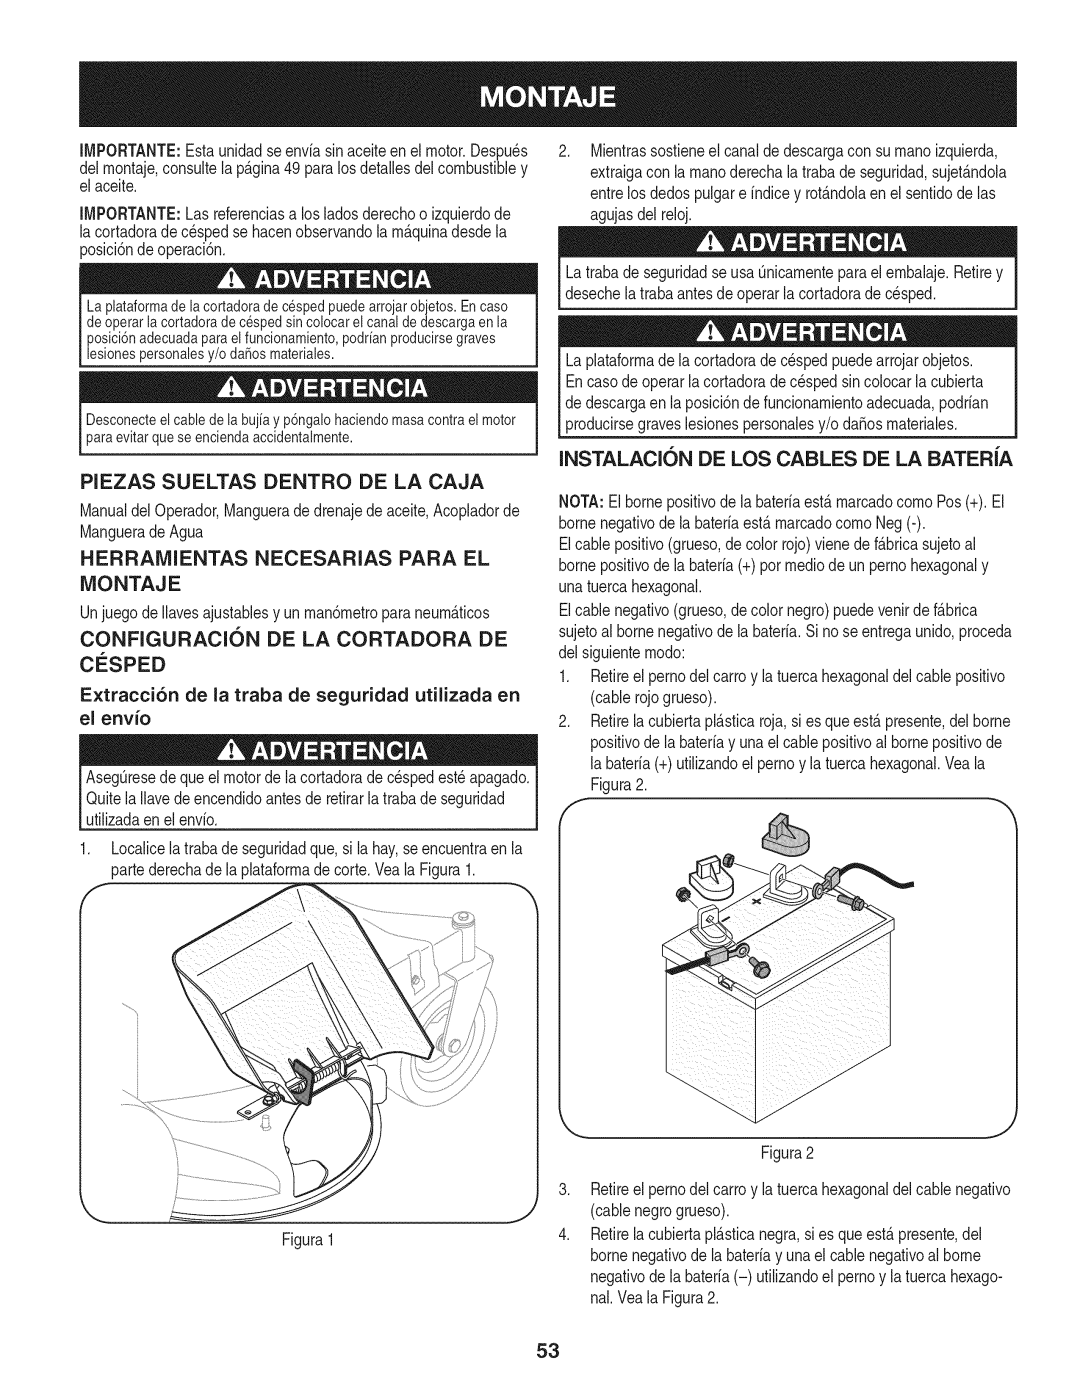 Craftsman 247.889980 manual Piezas Sueltas Dentro De La Caja, Herramientas Necesarias Para El Montaje, C_:Sped 